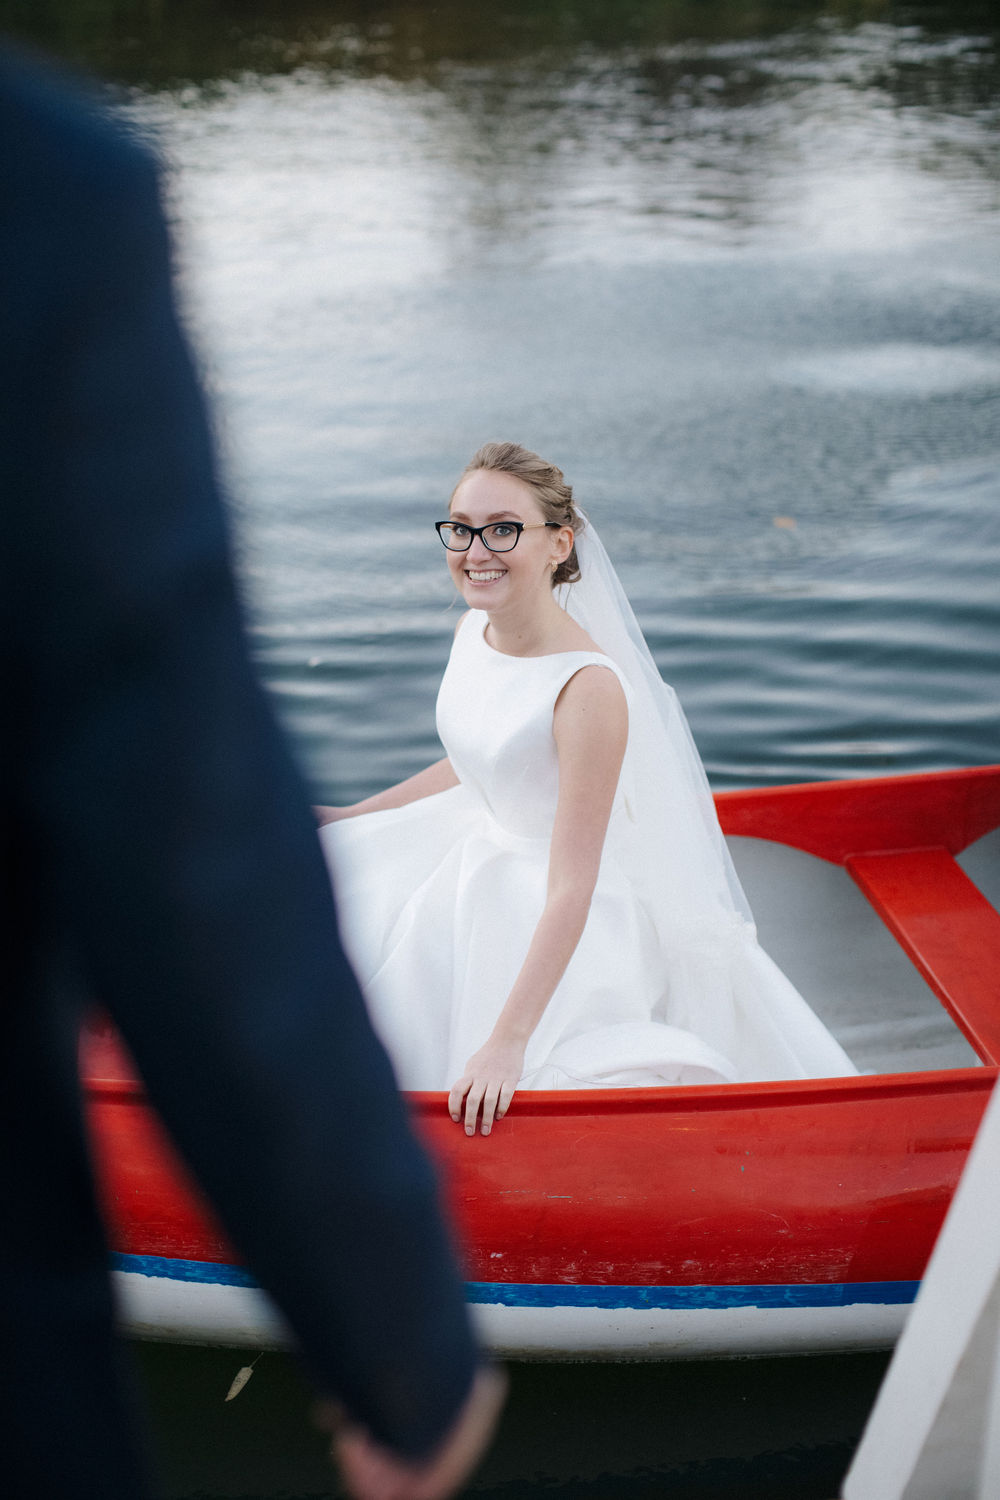 Катя и Андрей | Свадебная церемония на реке